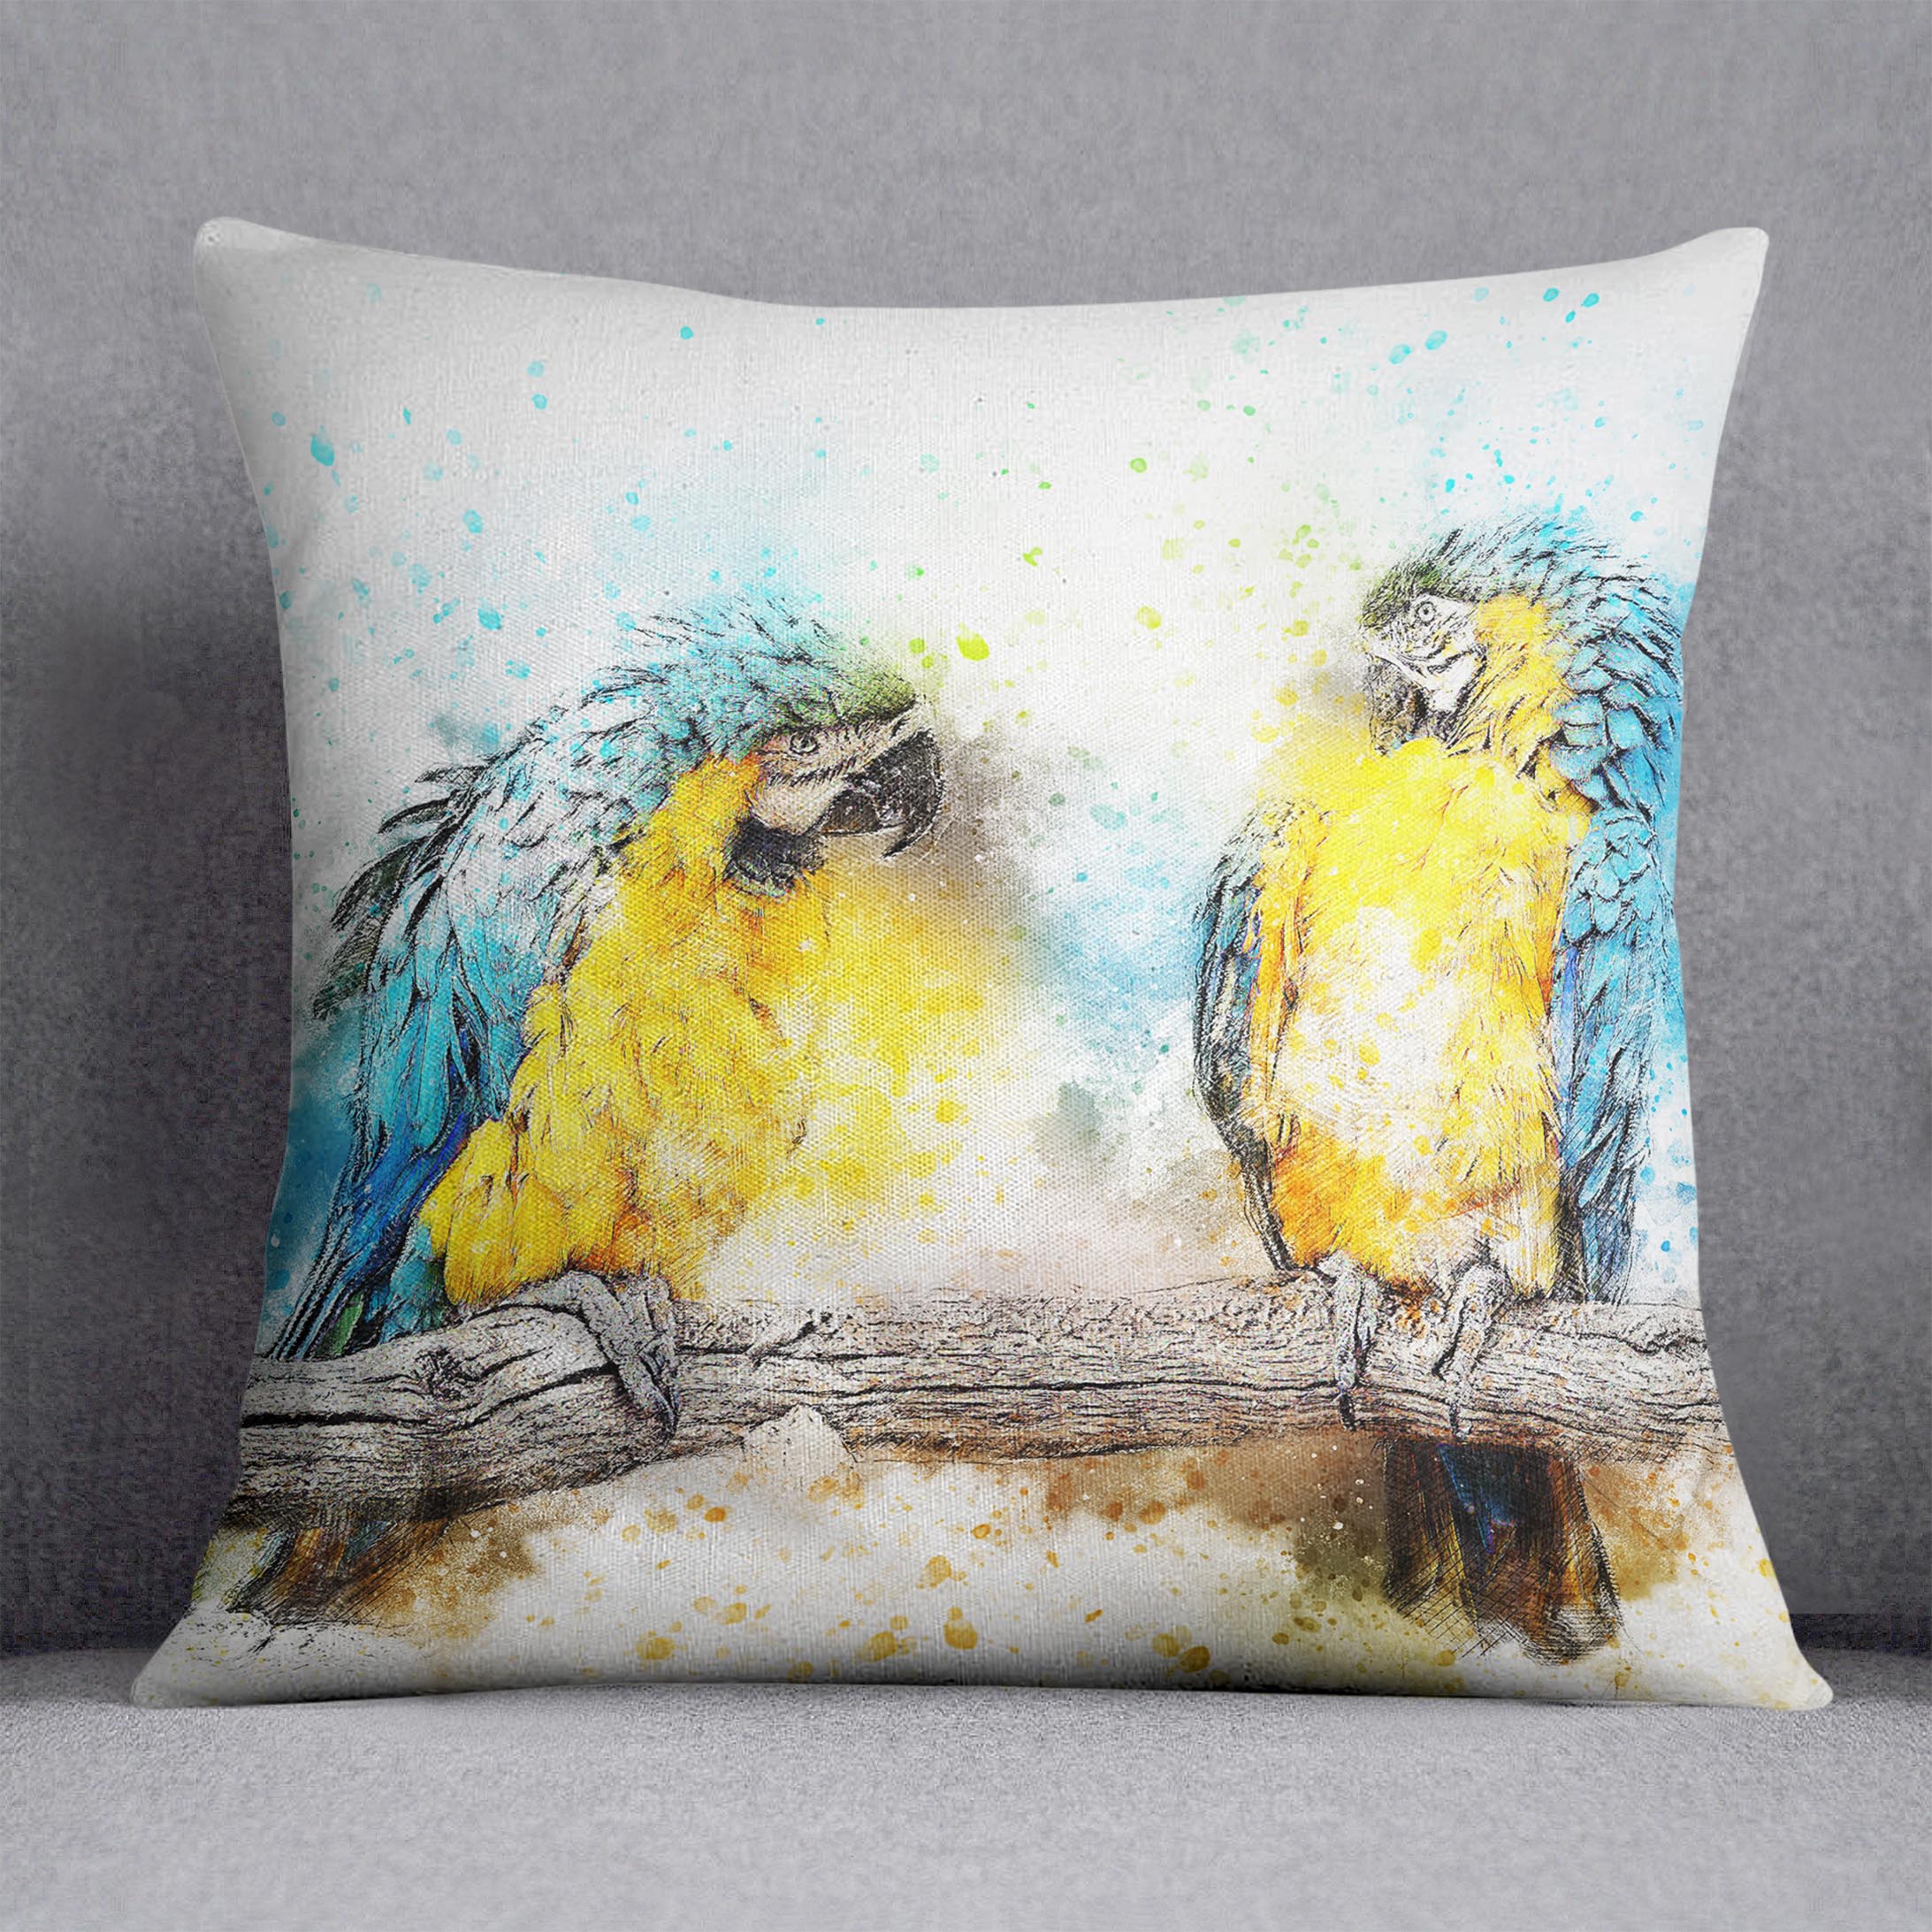 Watercolour Parrots Cushion